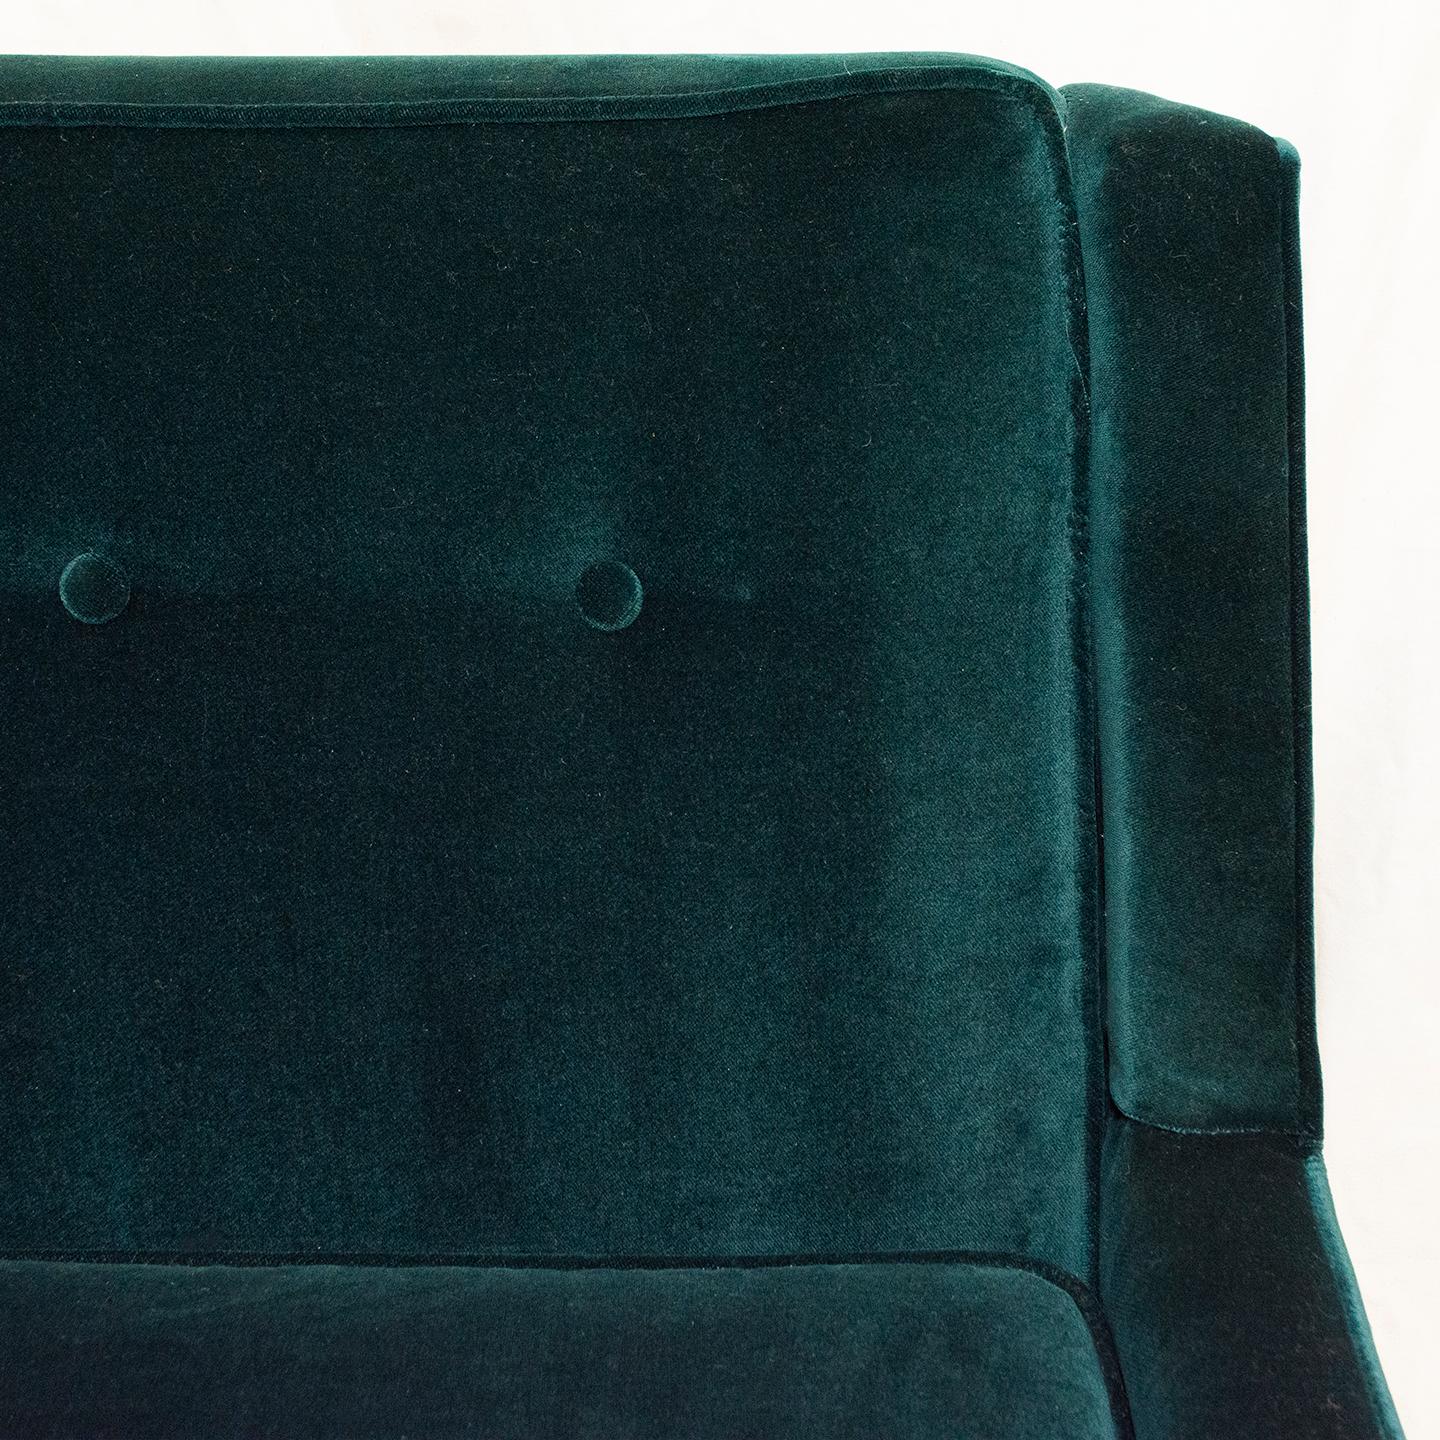 Dieses Sofa aus den 1960er Jahren von Knoll ist mit seinem smaragdgrünen Performance-Samt reich an Farbe und Textur. Mit seiner breiten, geometrischen Struktur ist das Sofa ein schönes Beispiel für ein klassisches Mid-Century Modern Möbel. Er wurde